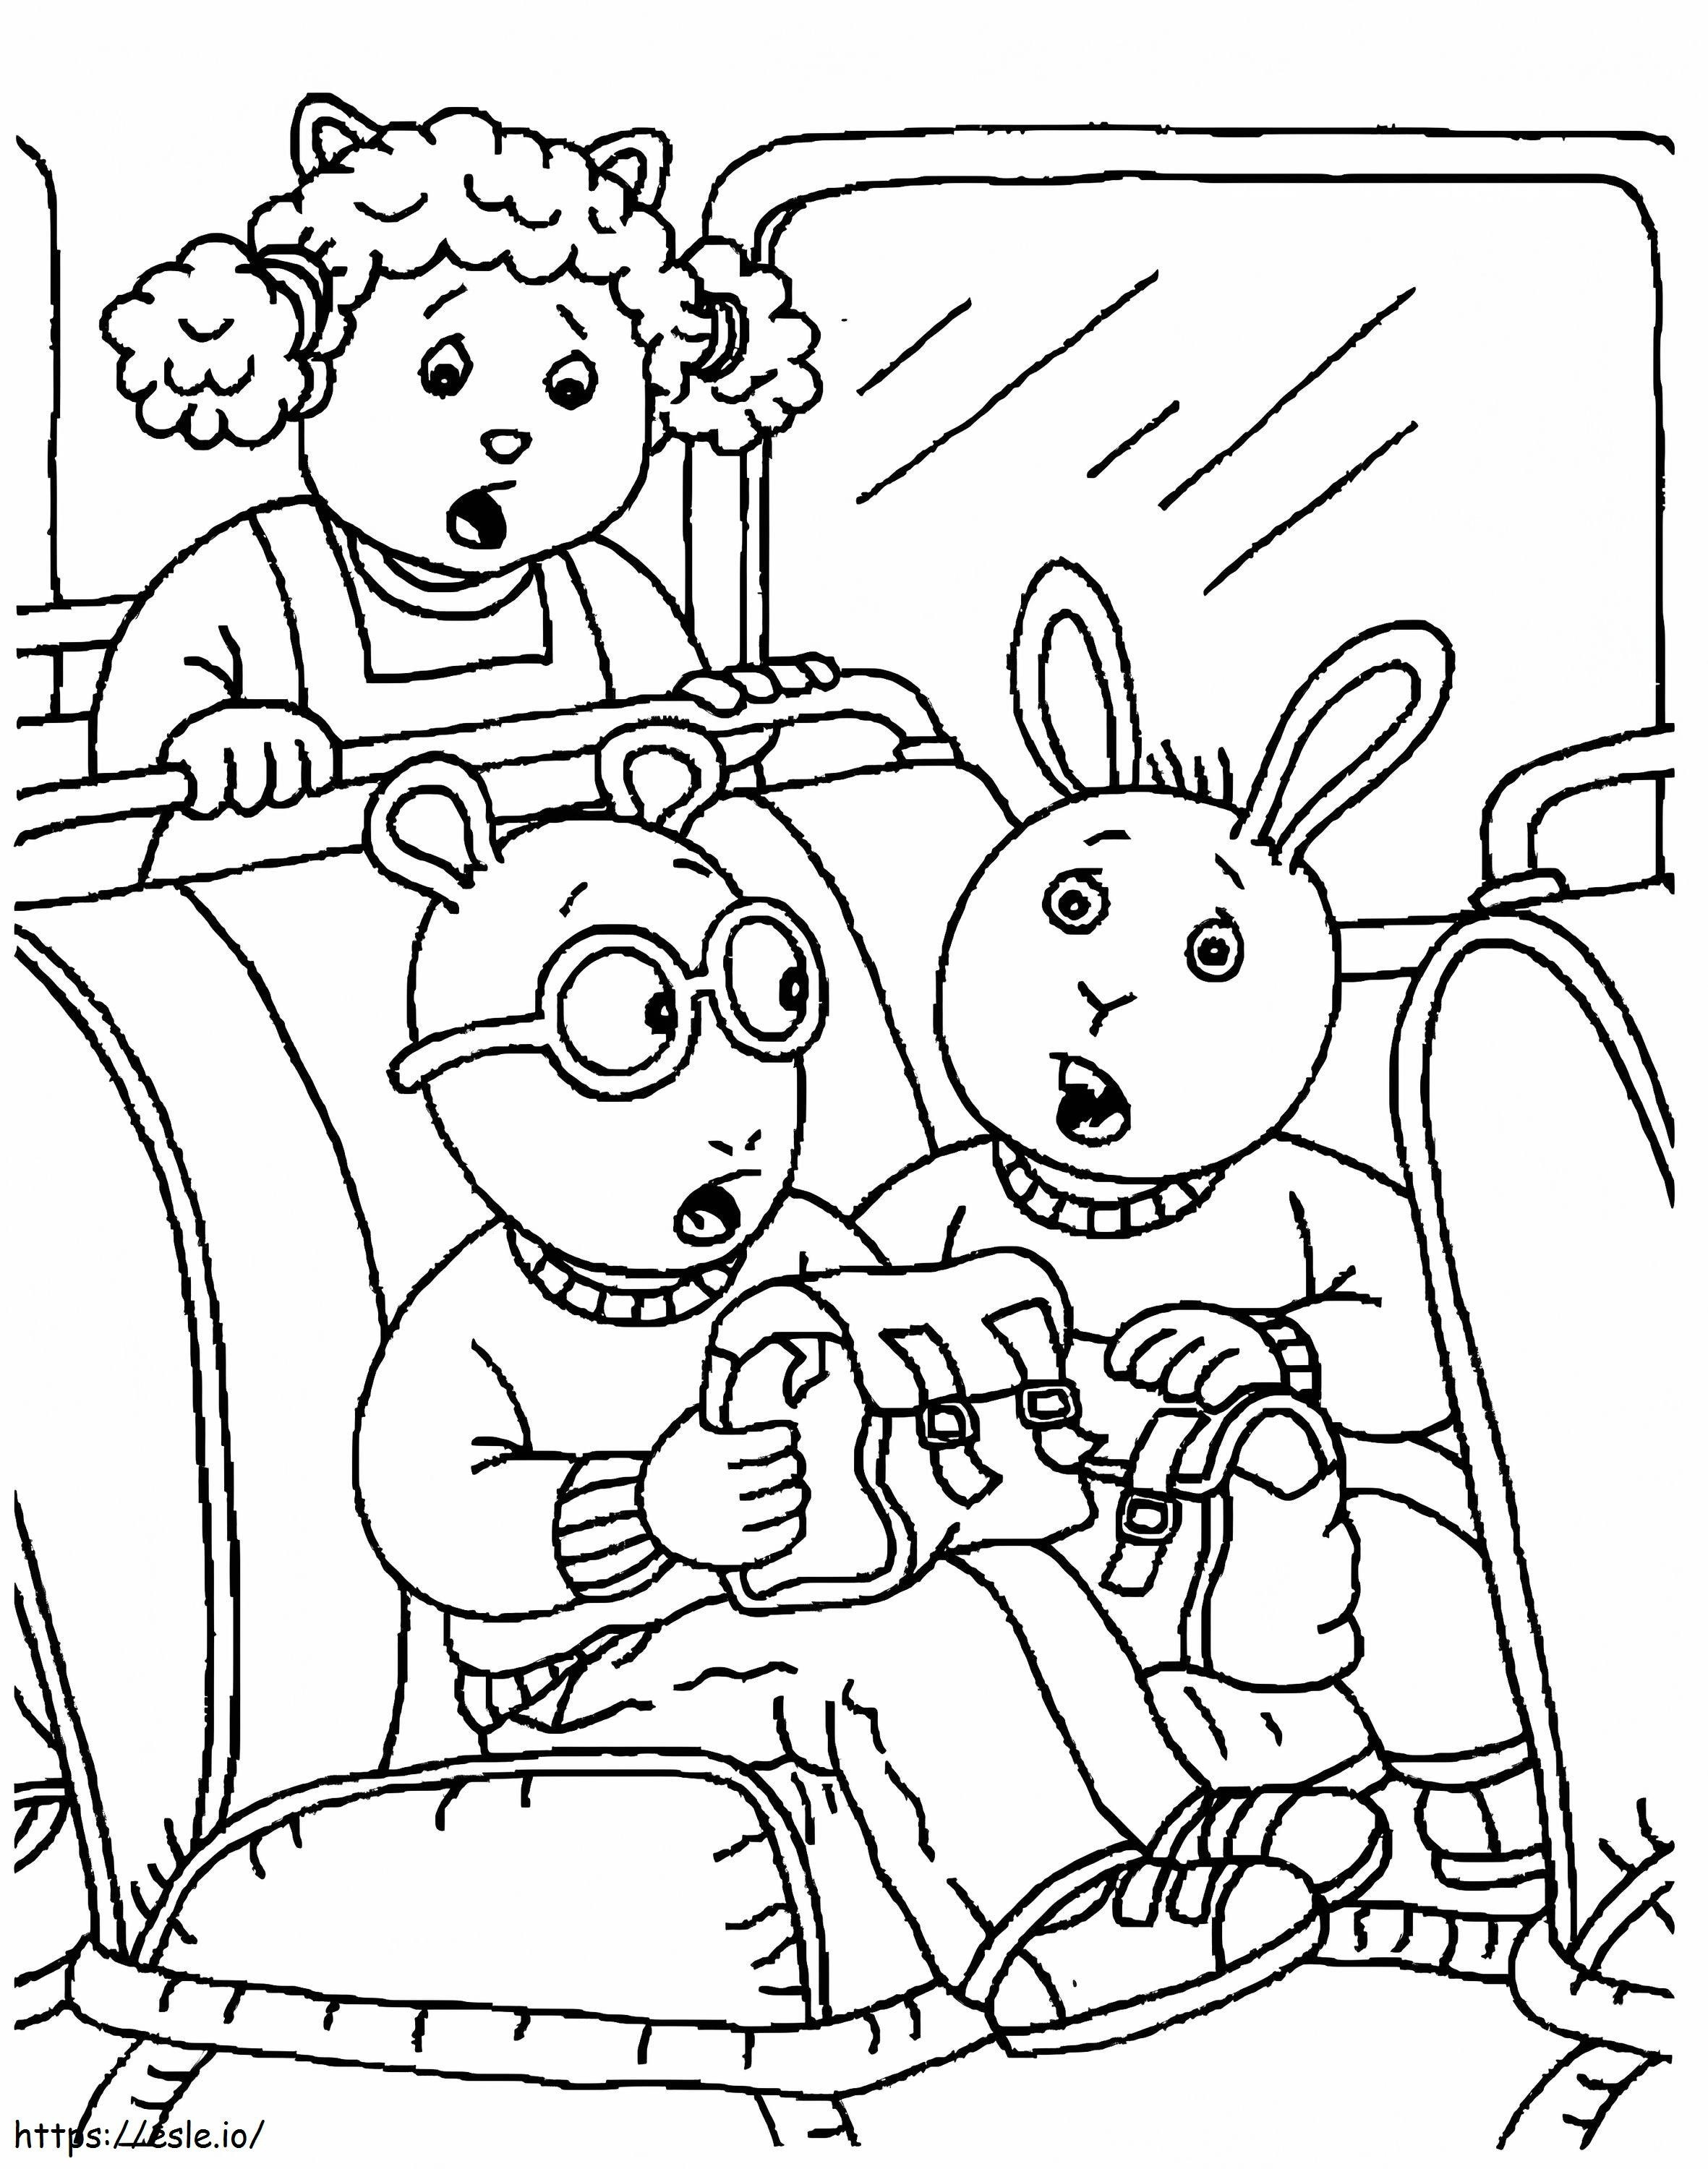 Arthur lee en el autobús para colorear